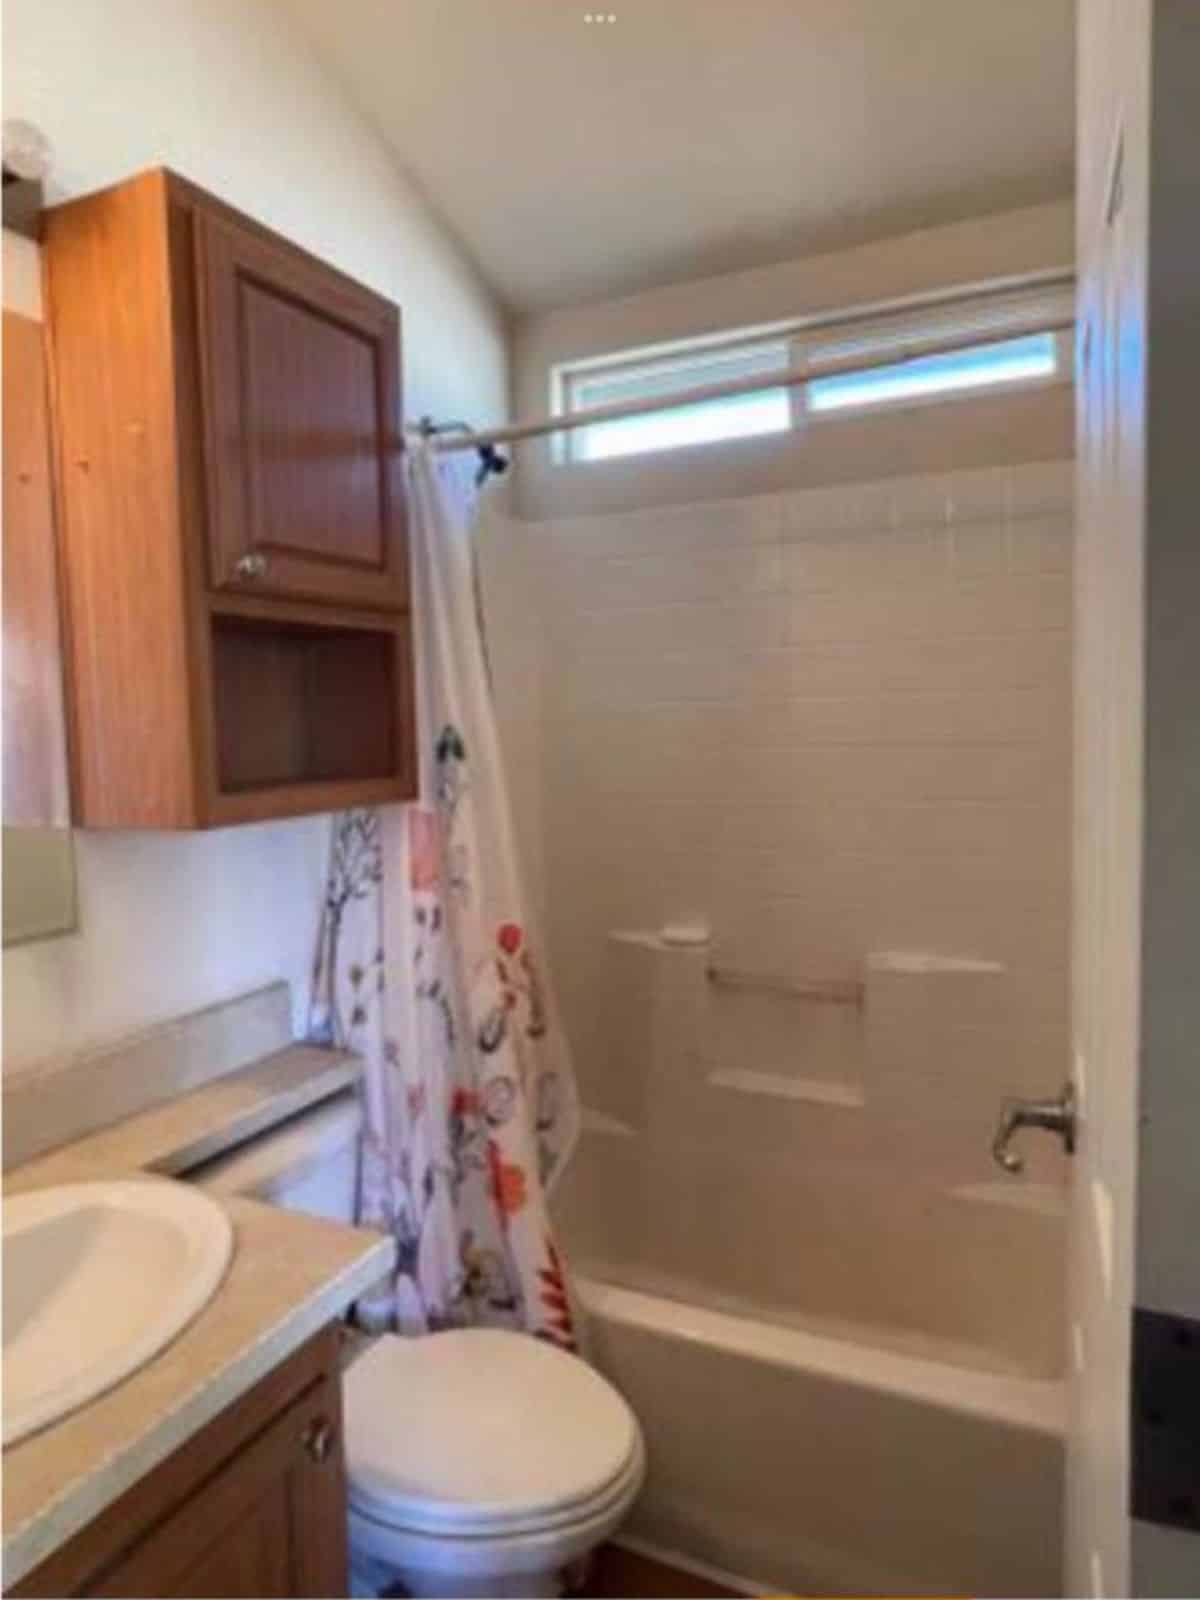 Bathroom has standard toilet, sink with vanity and bathtub